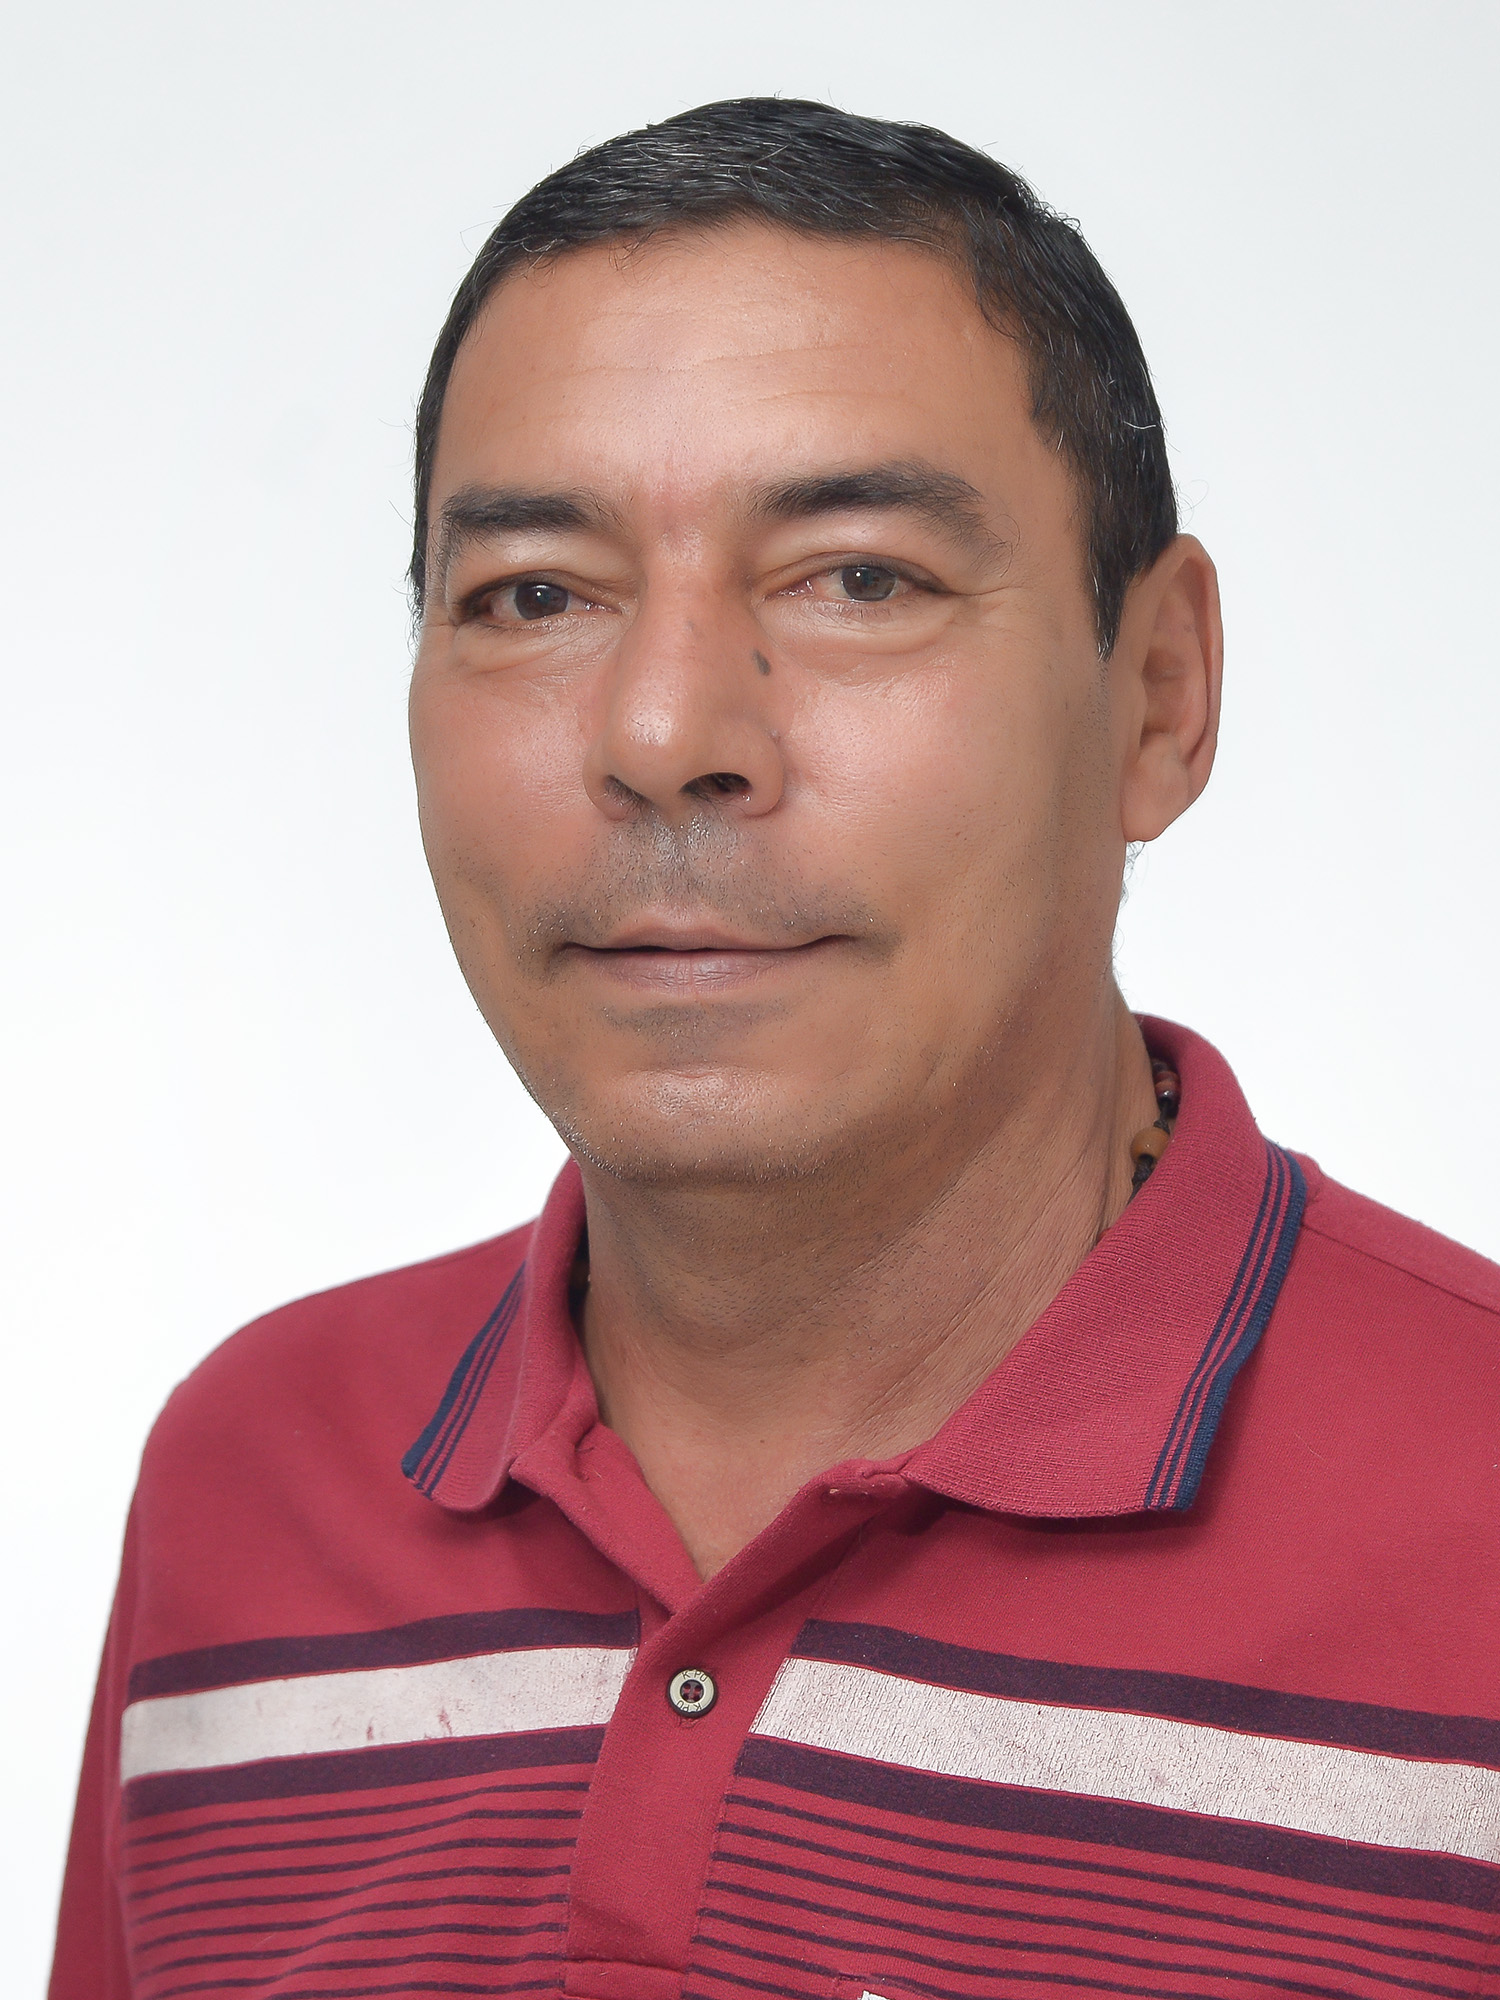 Jorge Humberto Giraldo Zuluaga